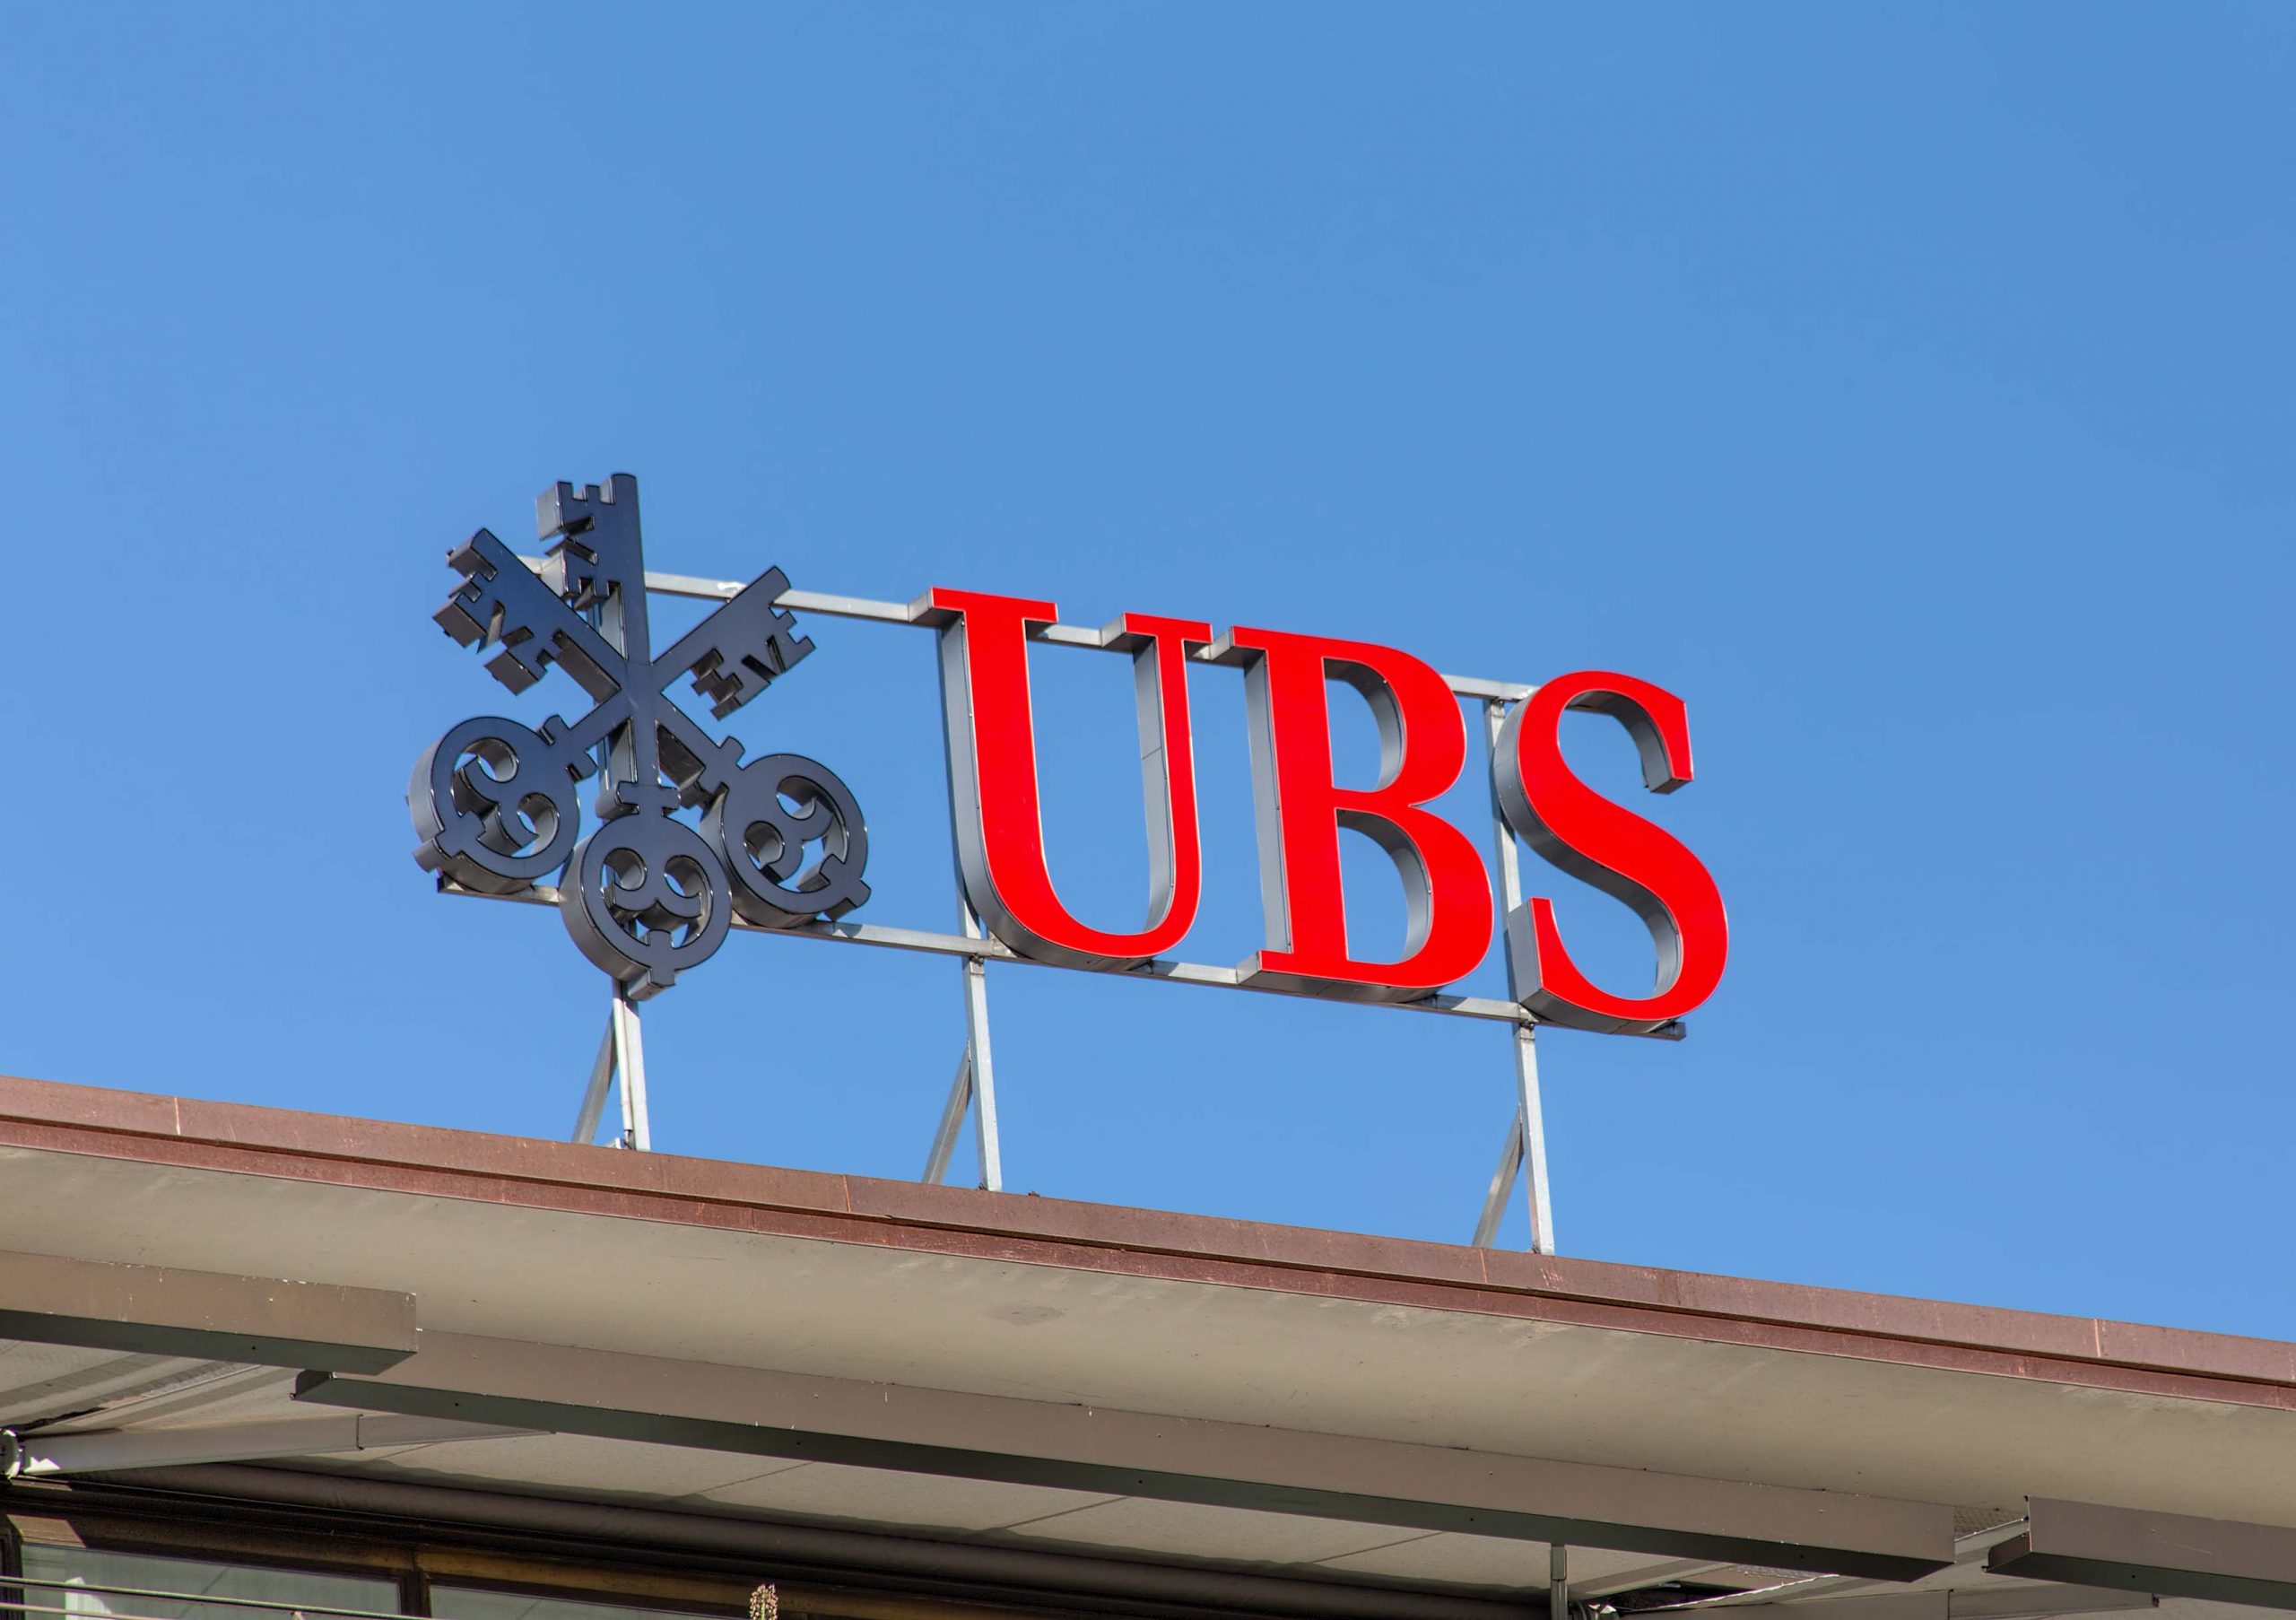 UBS beschleunigt Jahresberichterstattung